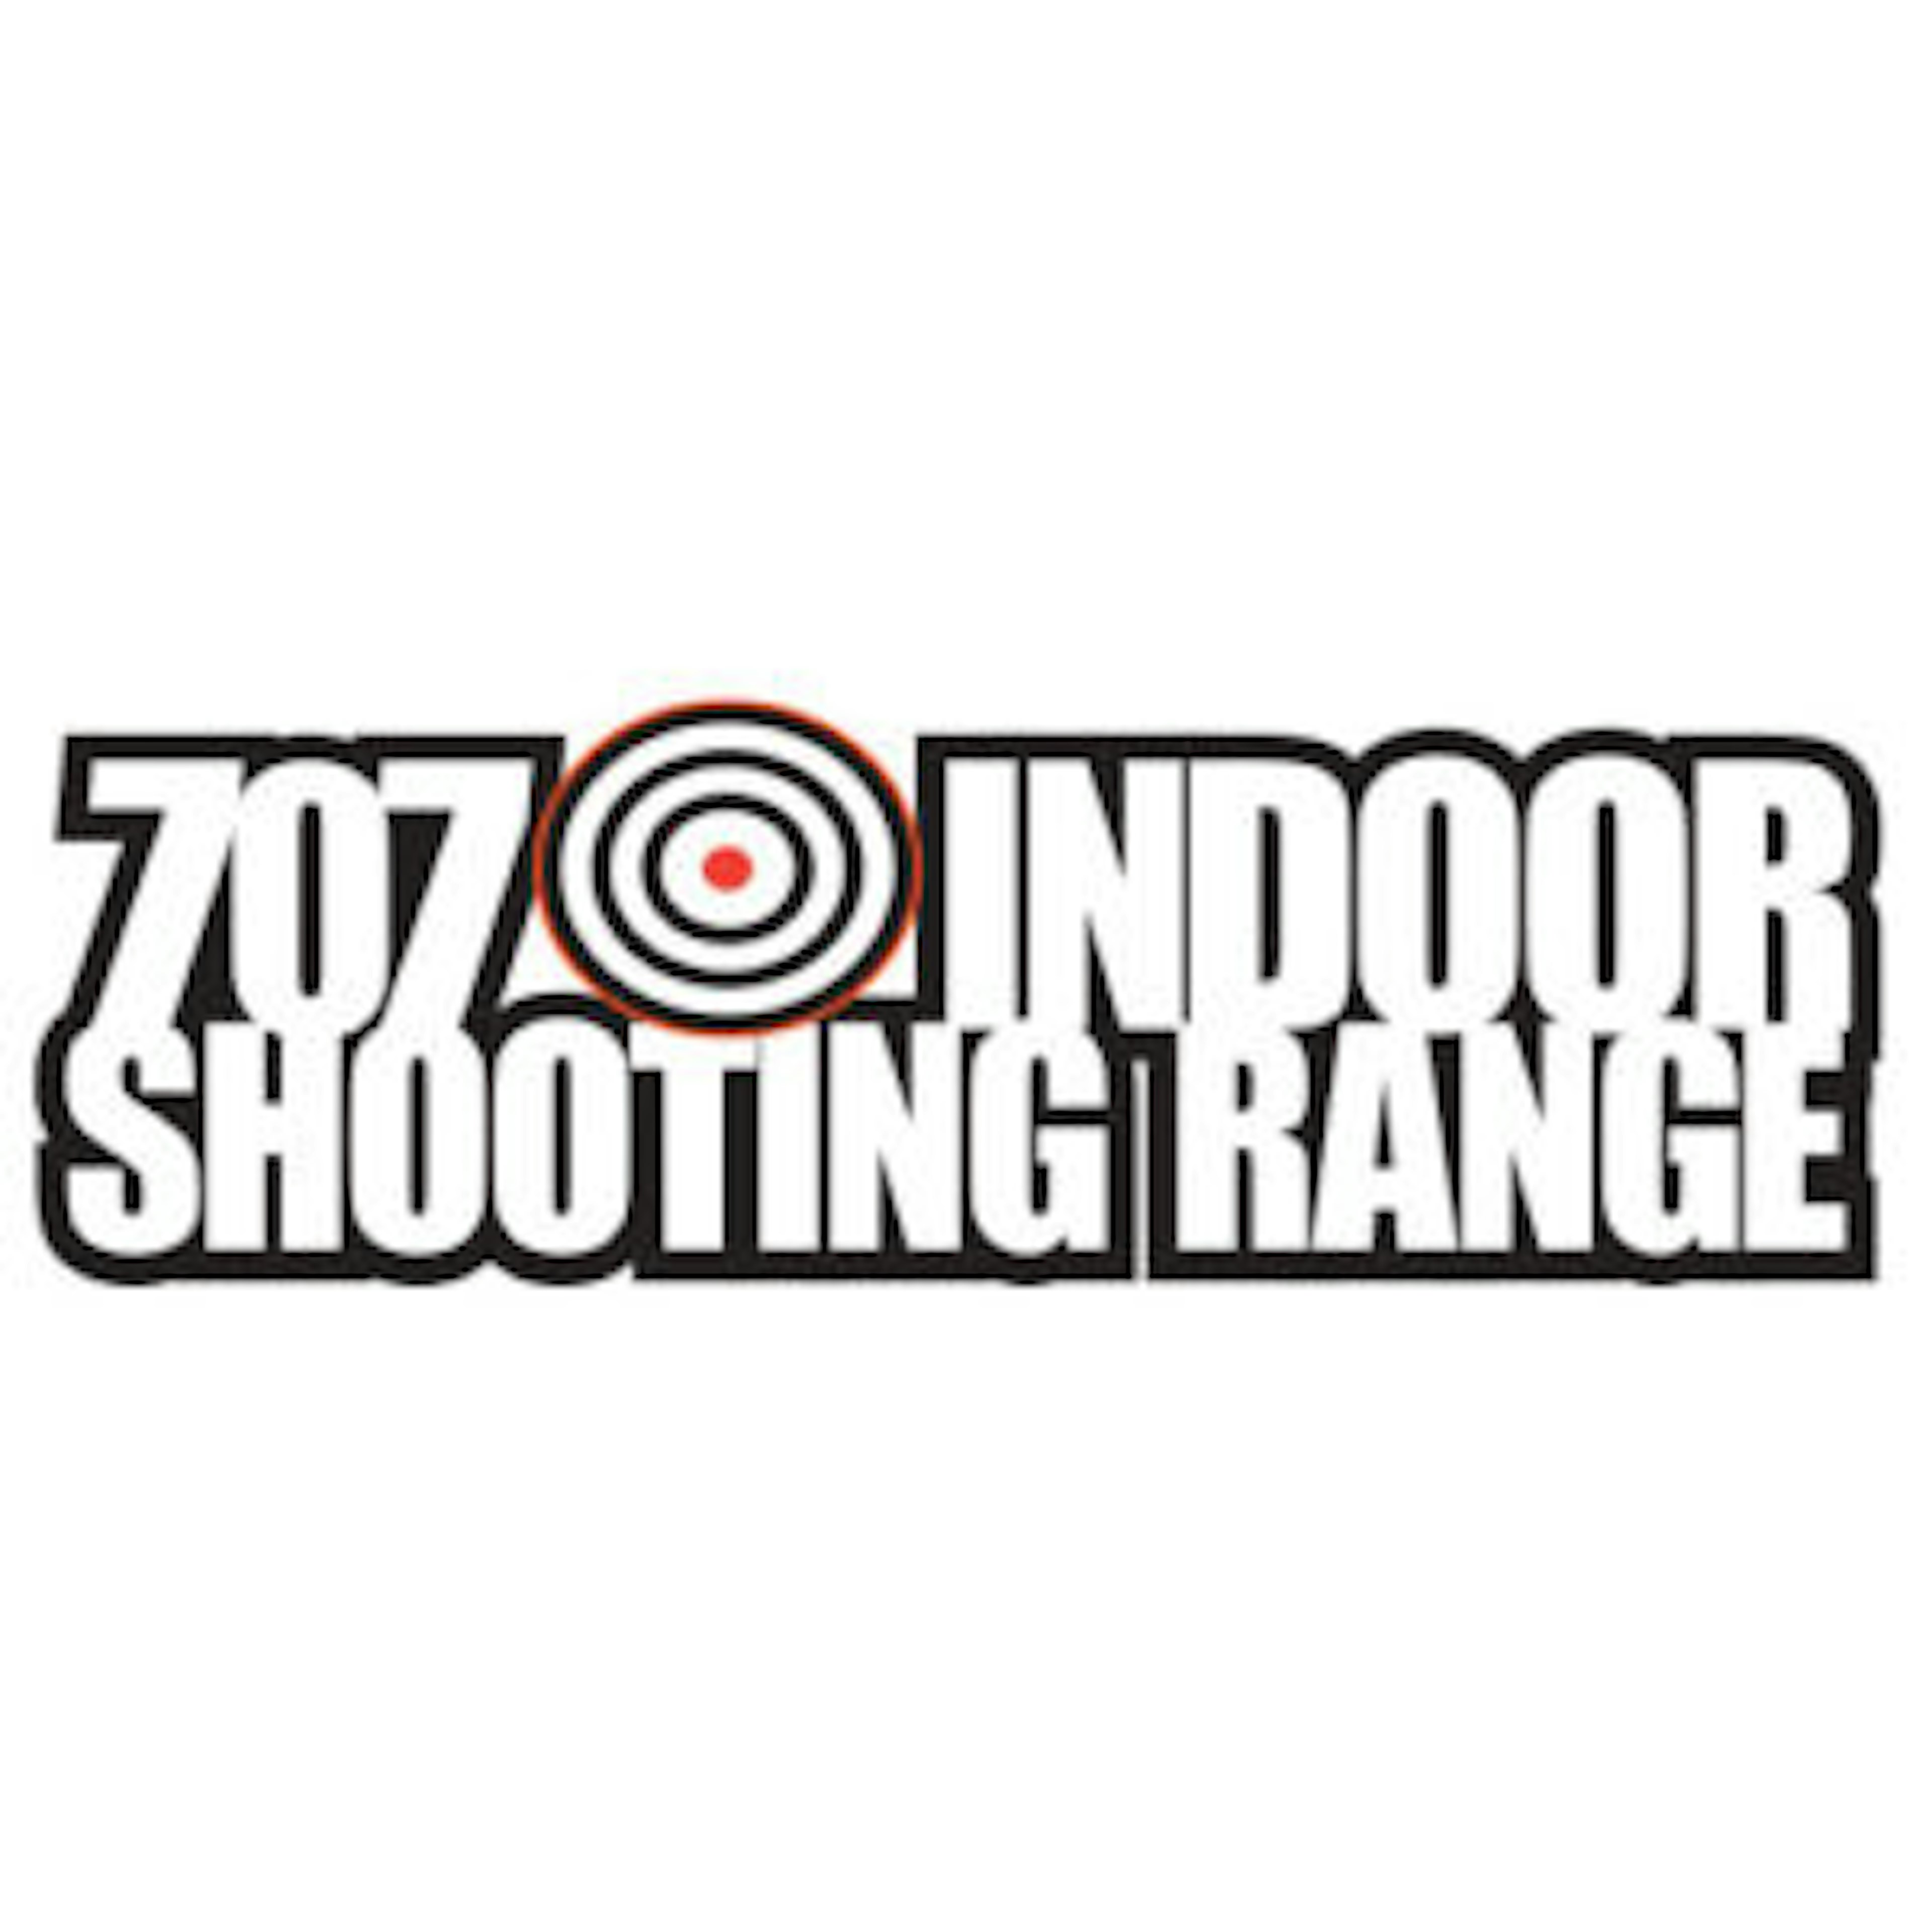 707 Indoor Shooting Range